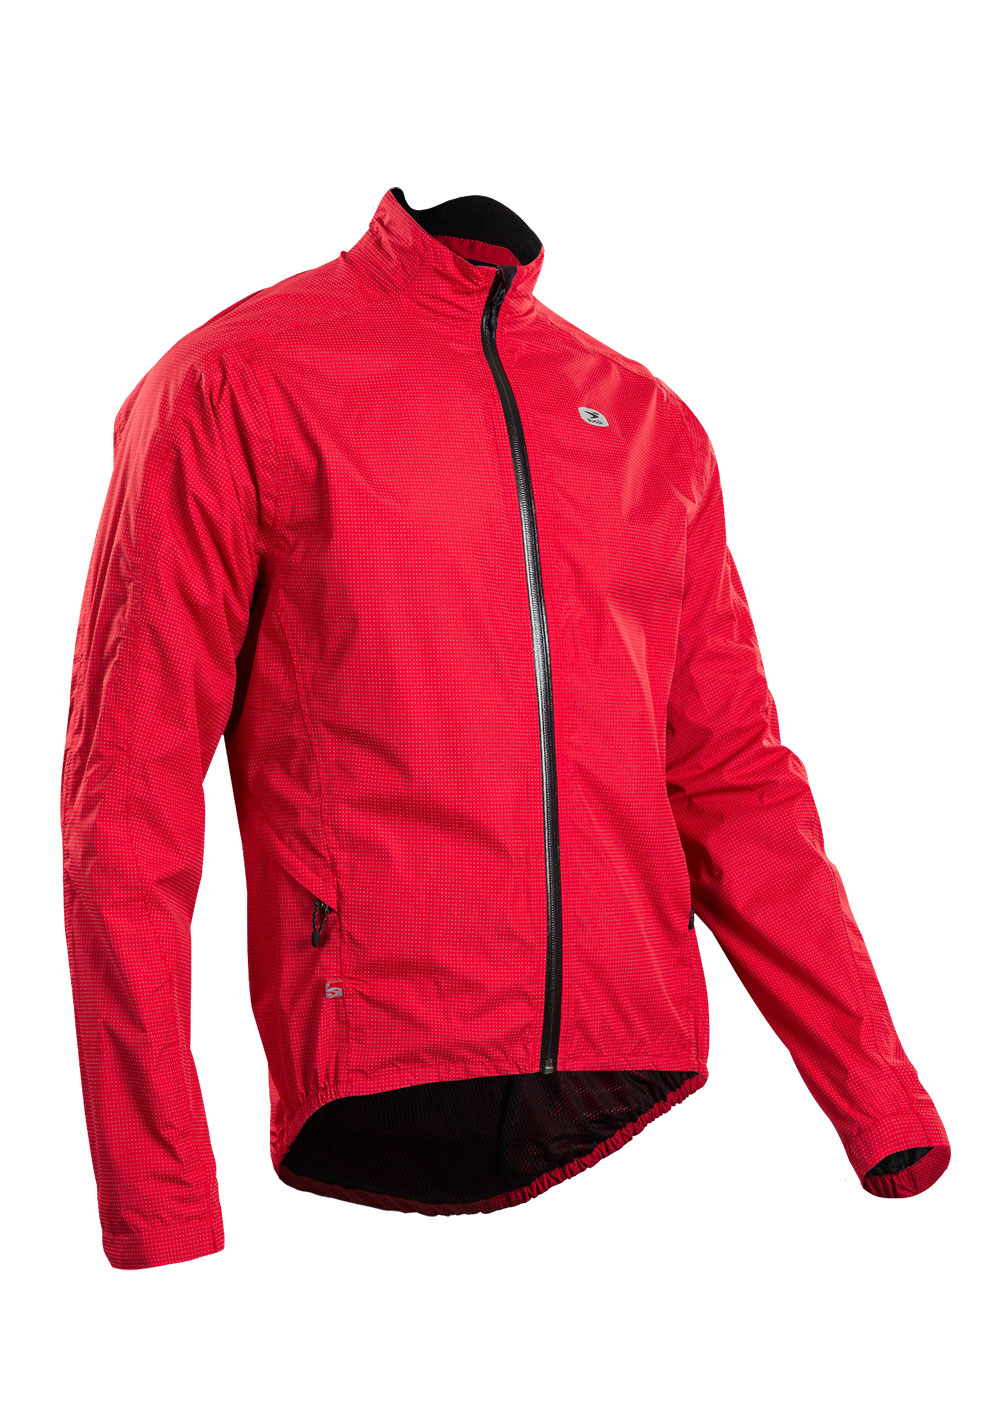 Куртка Sugoi ZAP BIKE, светоотражающая ткань, мужская, CHI (красная), XXL фото 1